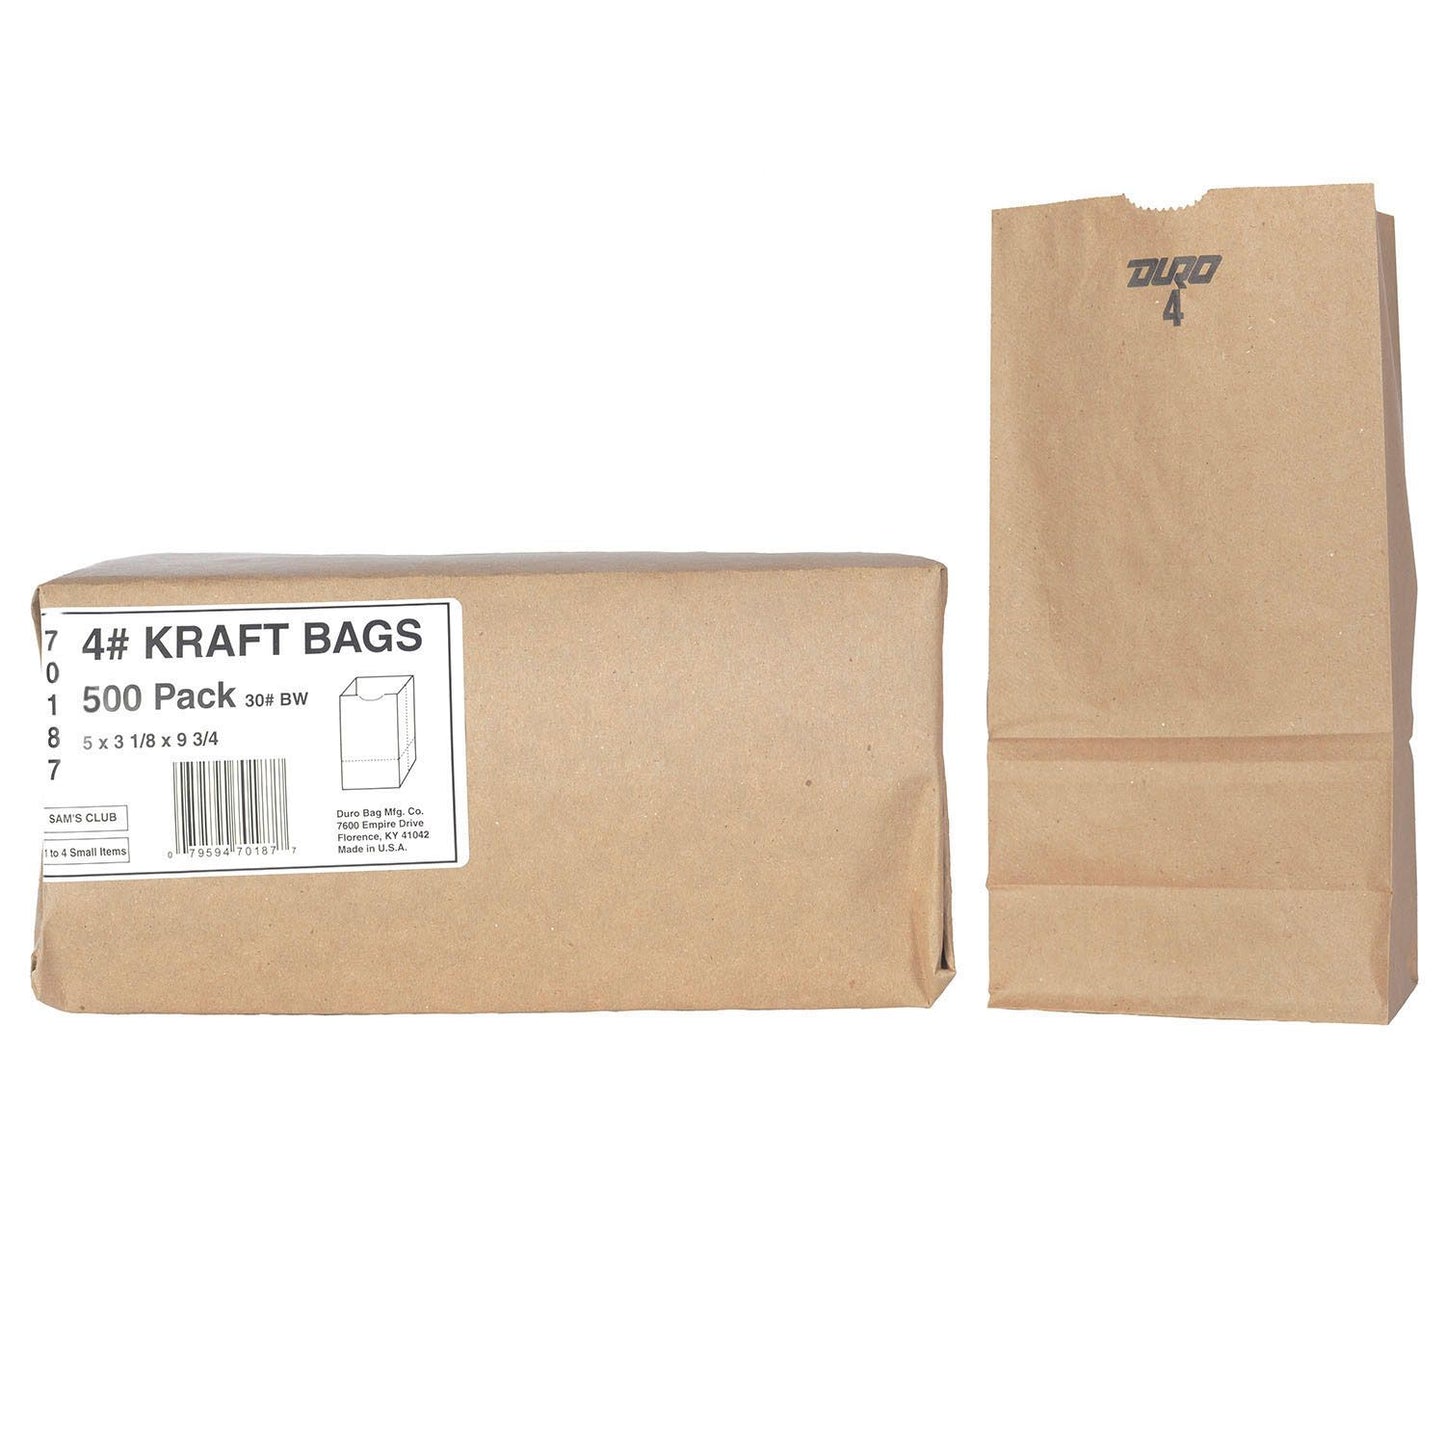 Duro Bag 4# Kraft Bags (500ct.)